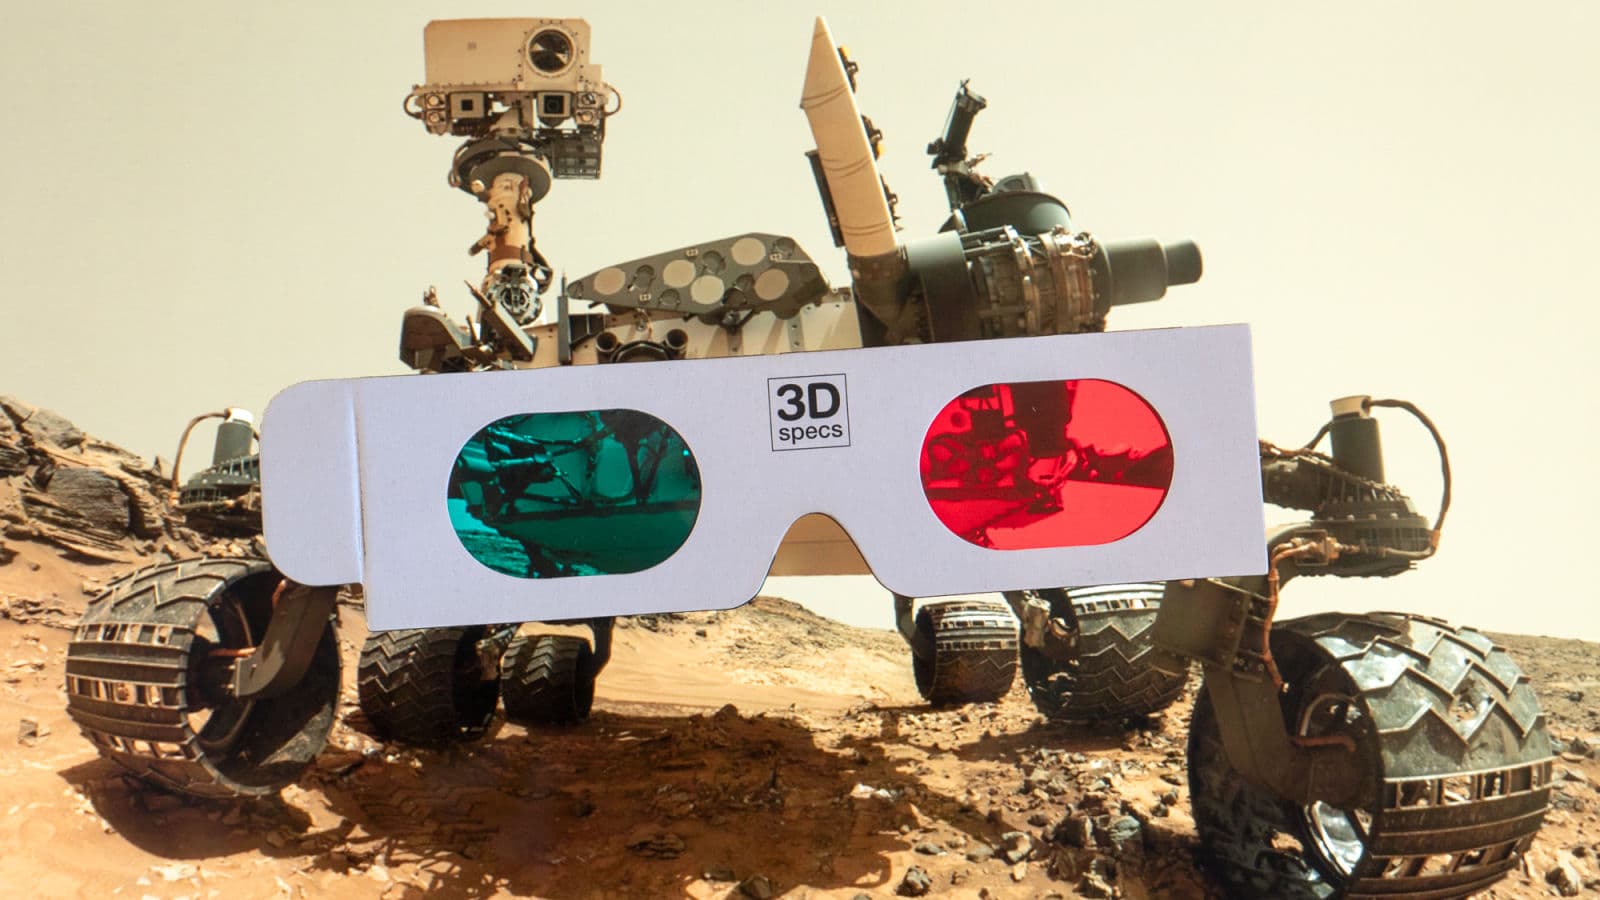 Rover curiosity ao fundo em montagem com óculos 3D